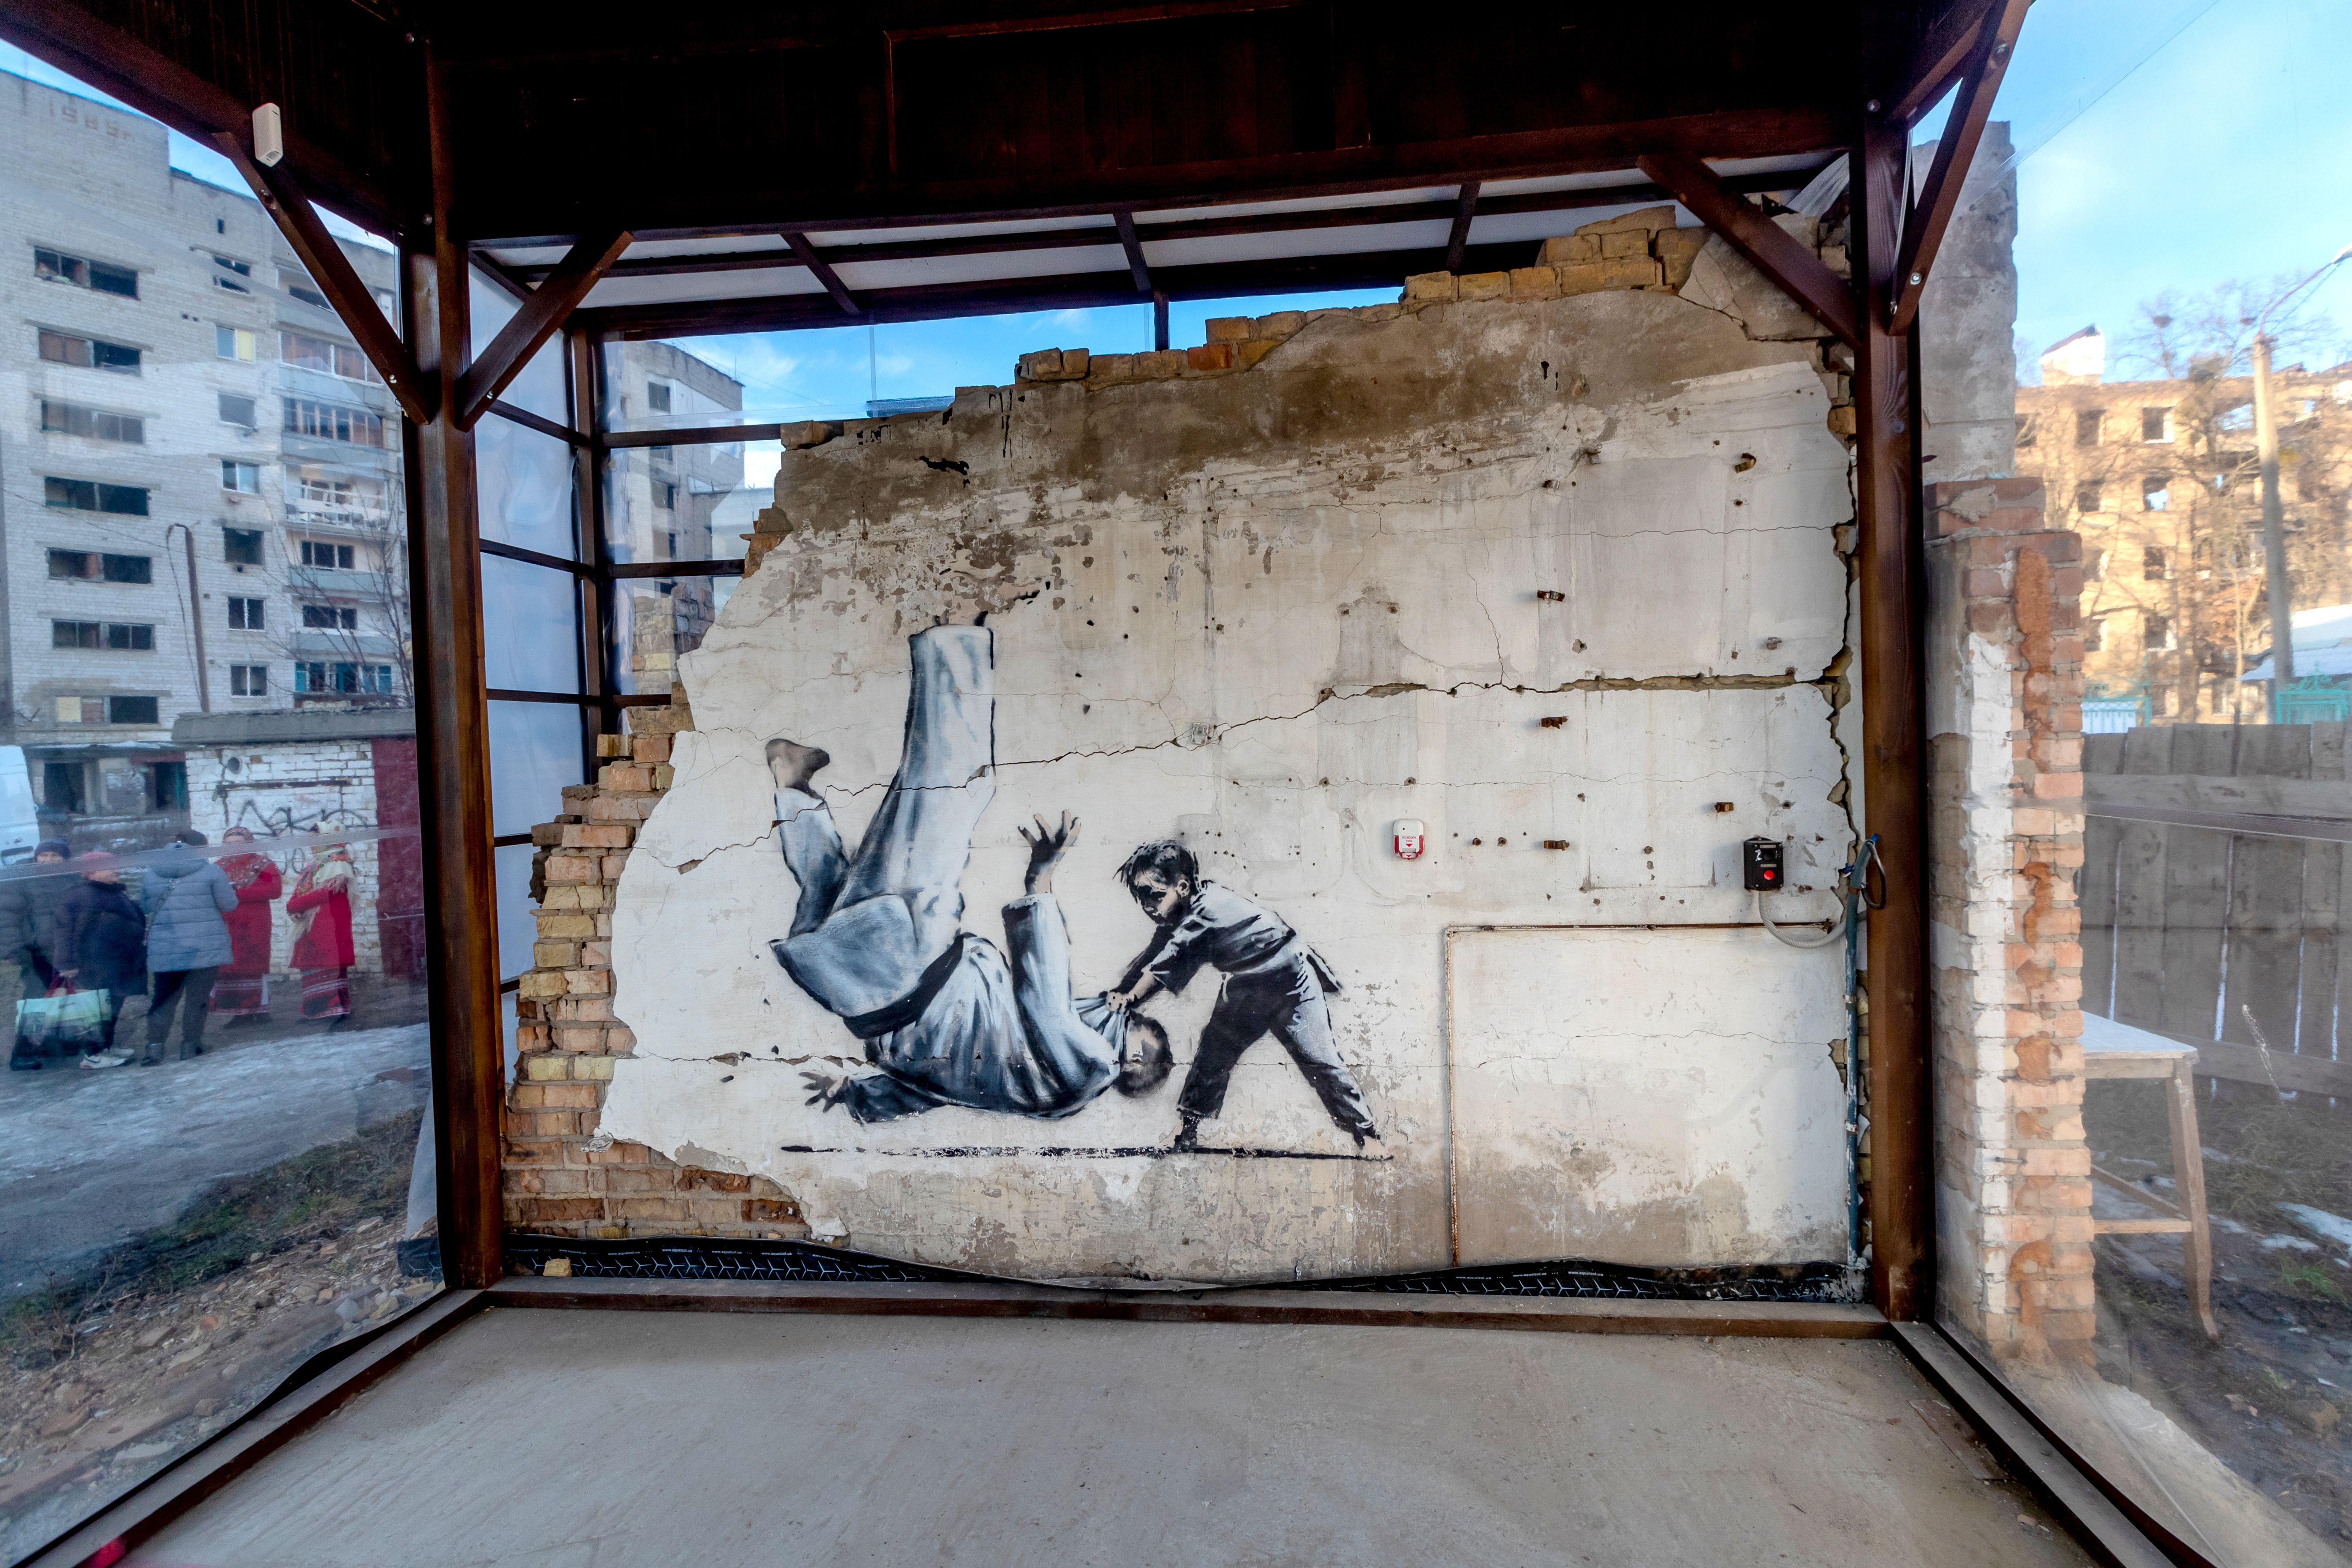 Der Junge, der einen erwachsenen Judoka besiegt, von Banksy, abgebildet in Borodianka, Region Kiew, Nordukraine